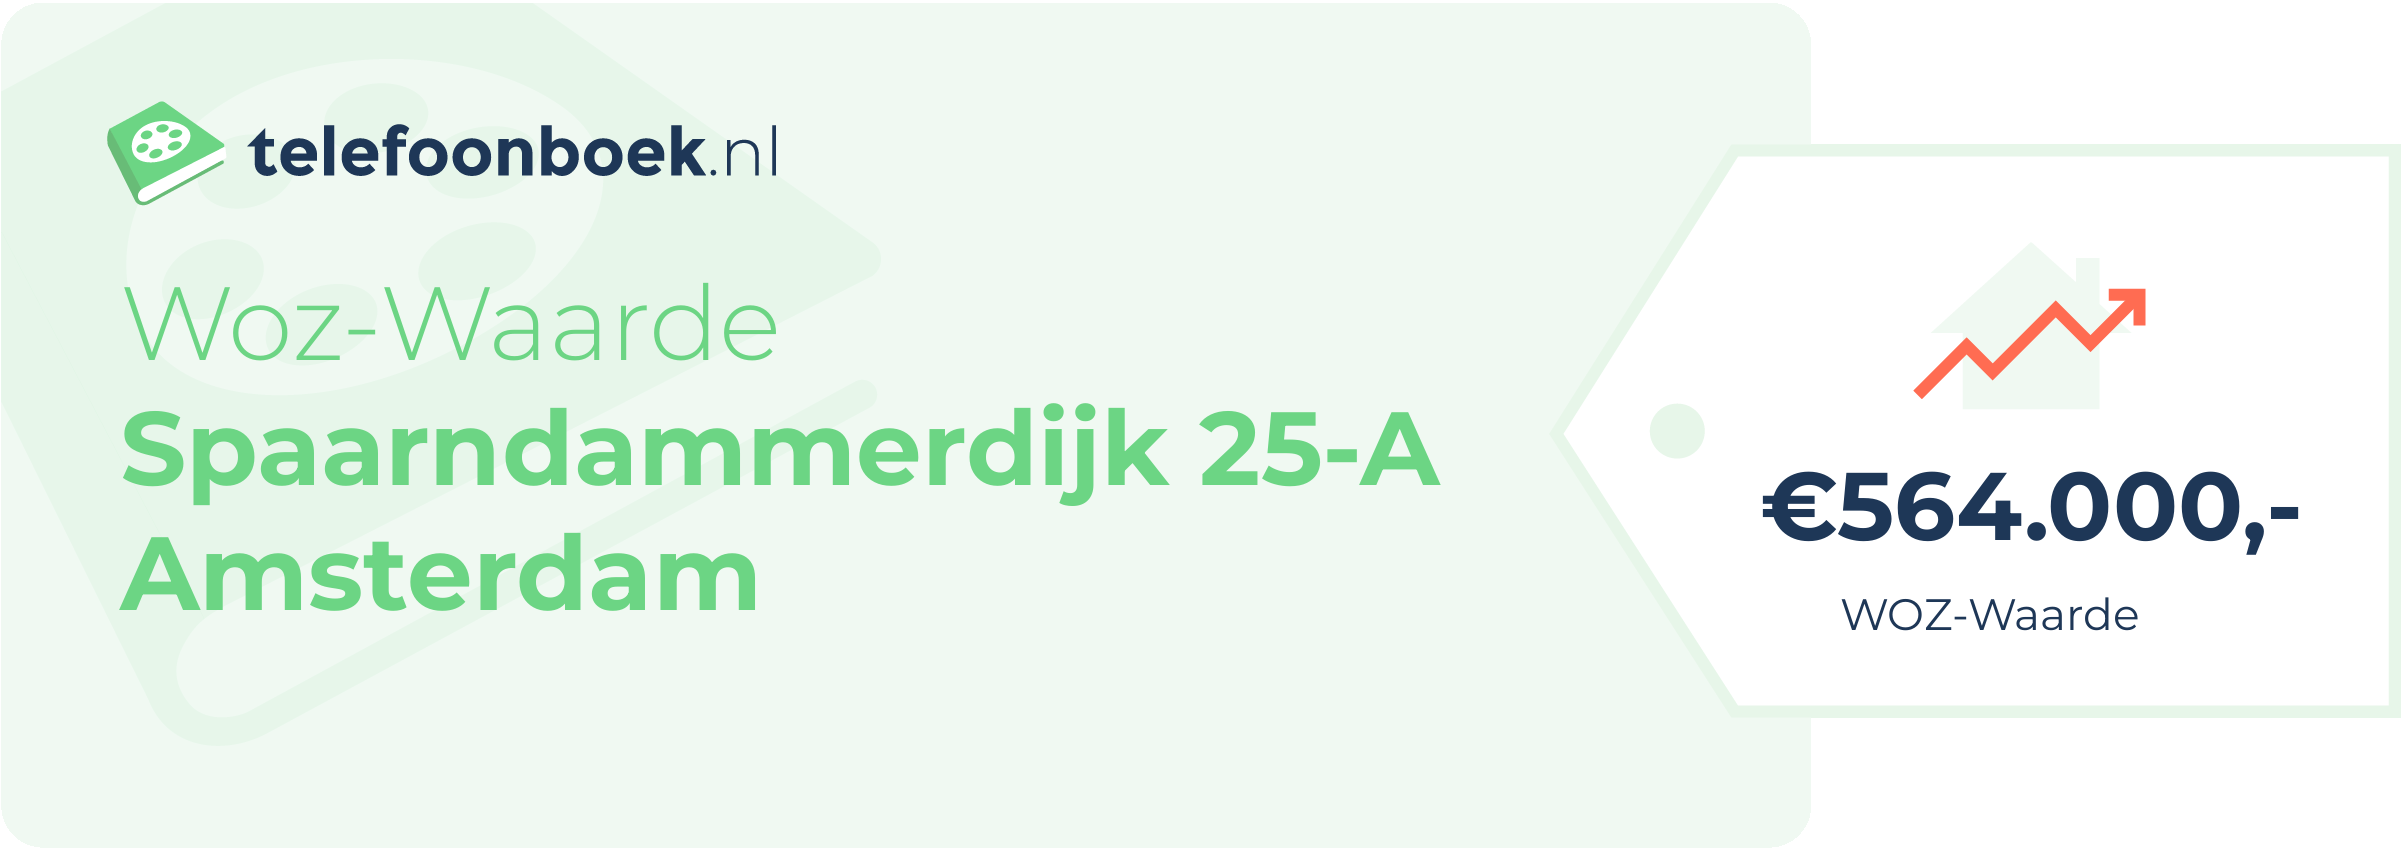 WOZ-waarde Spaarndammerdijk 25-A Amsterdam